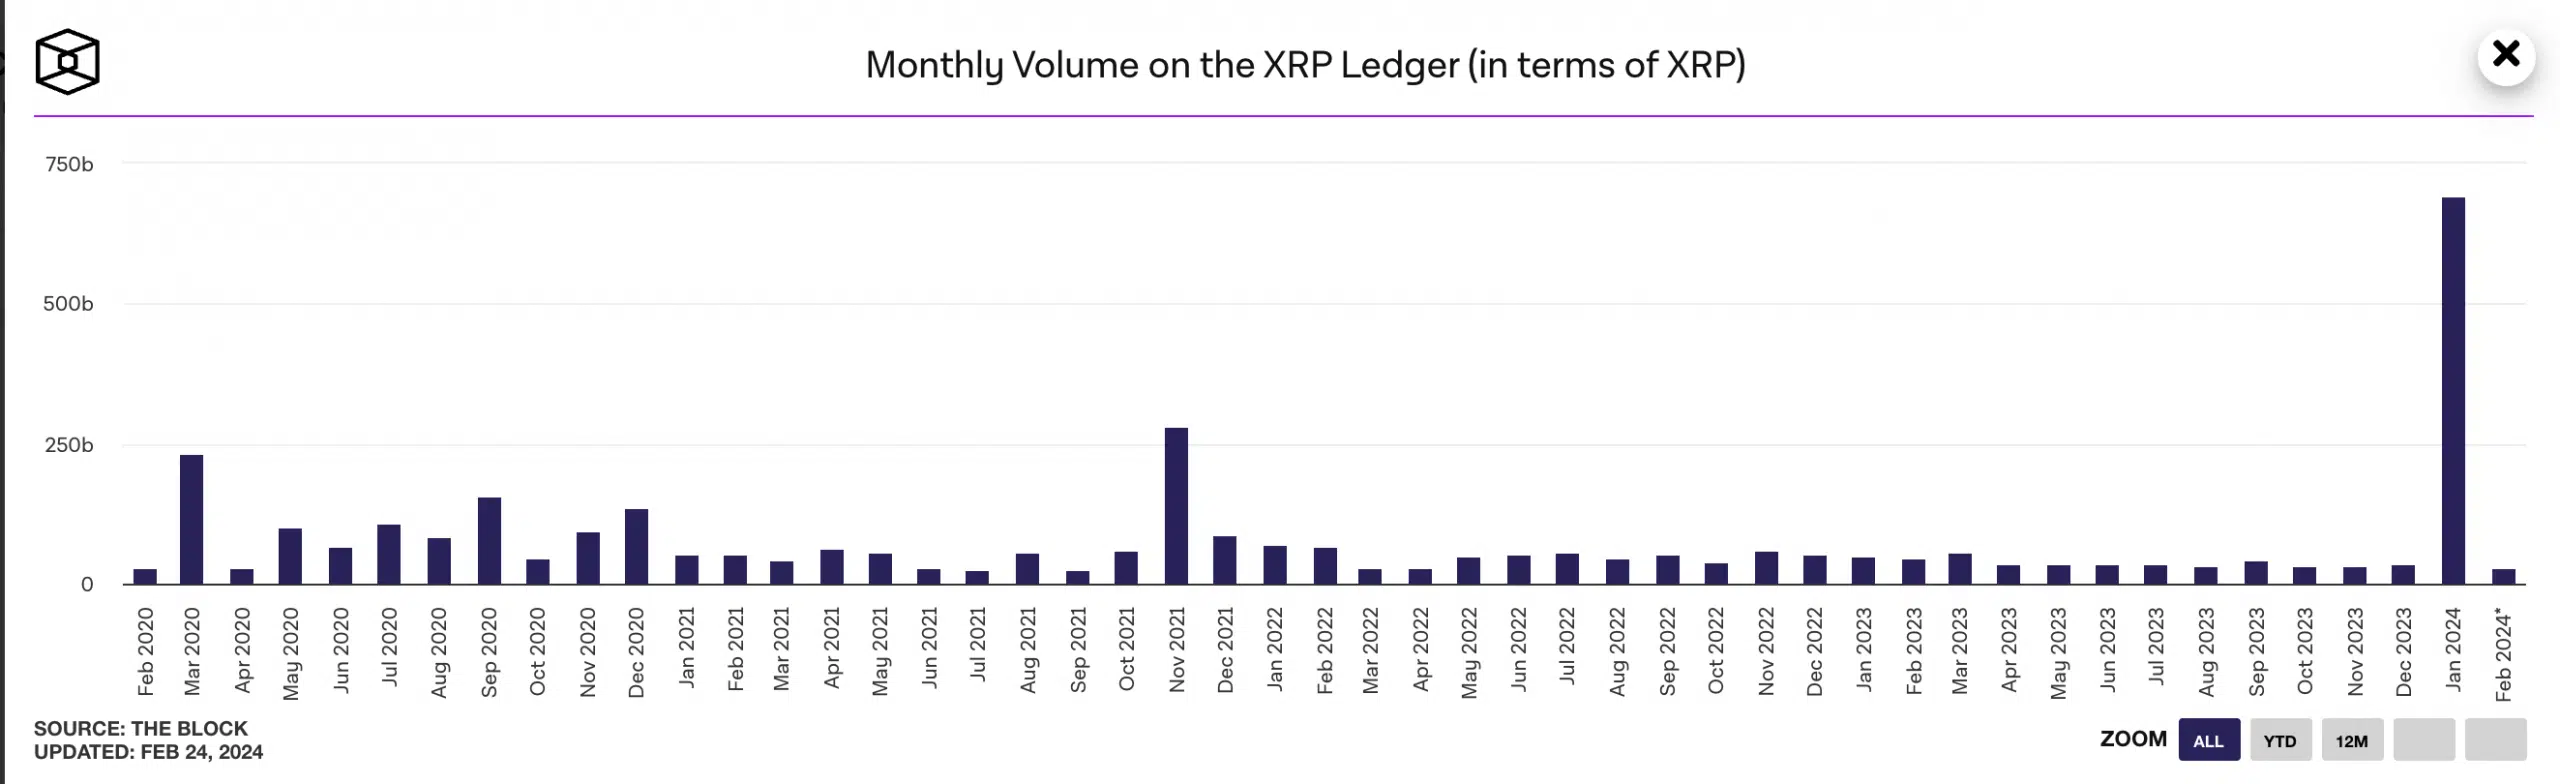 XRPL Monthly Volume 